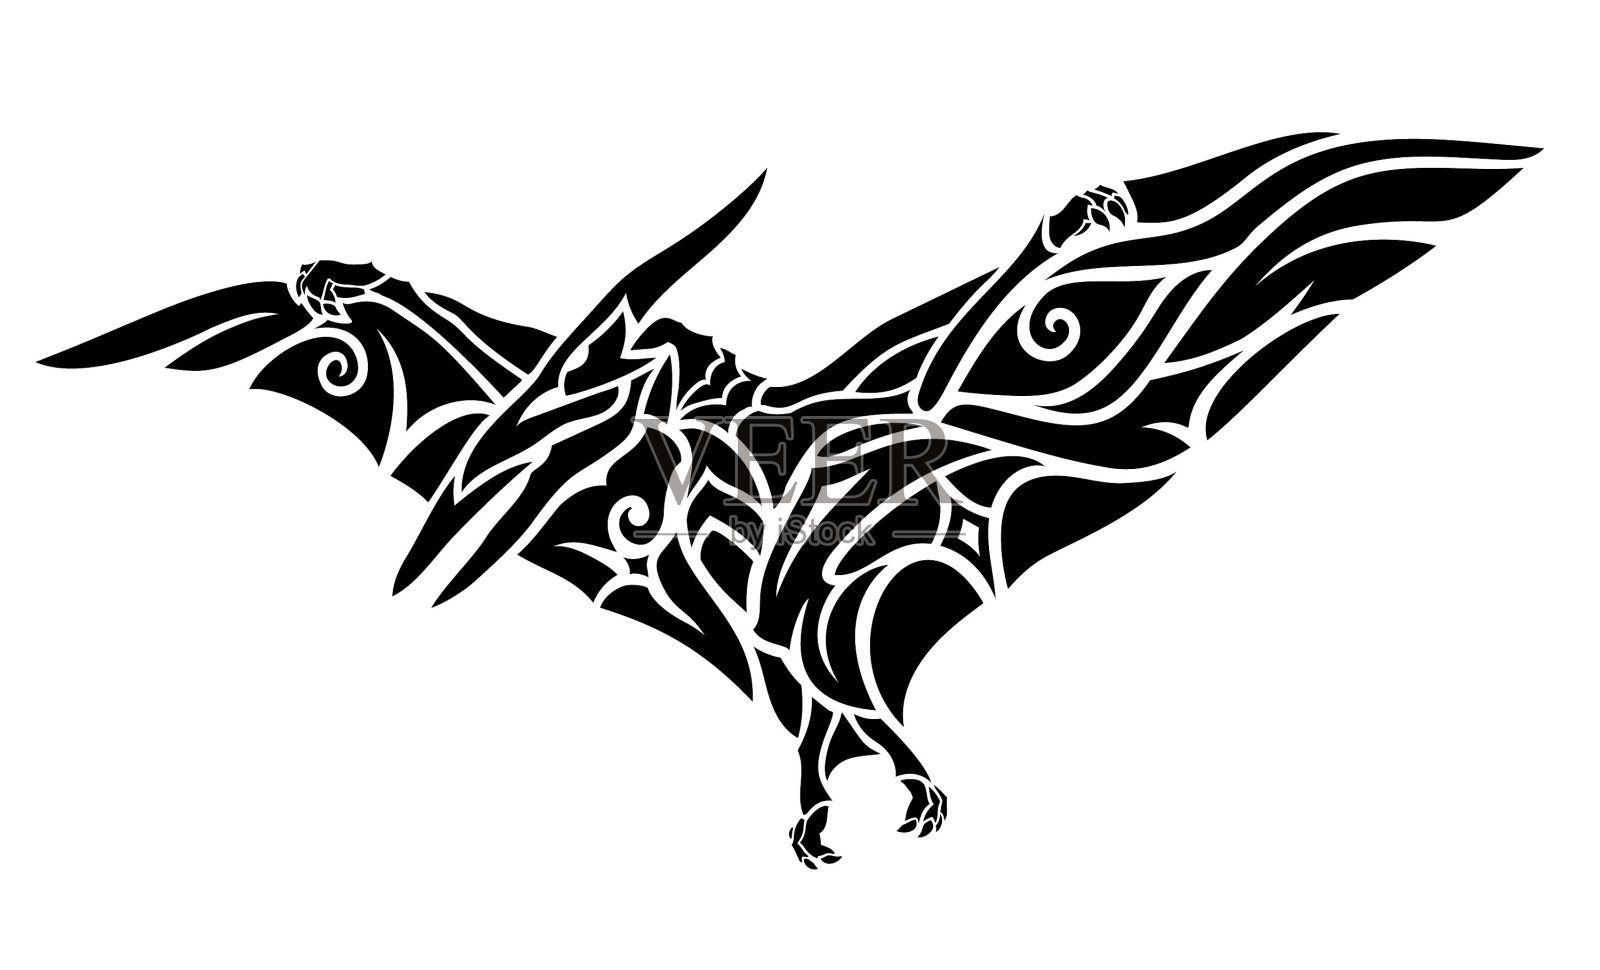 部落纹身艺术与黑色飞行翼龙设计元素图片